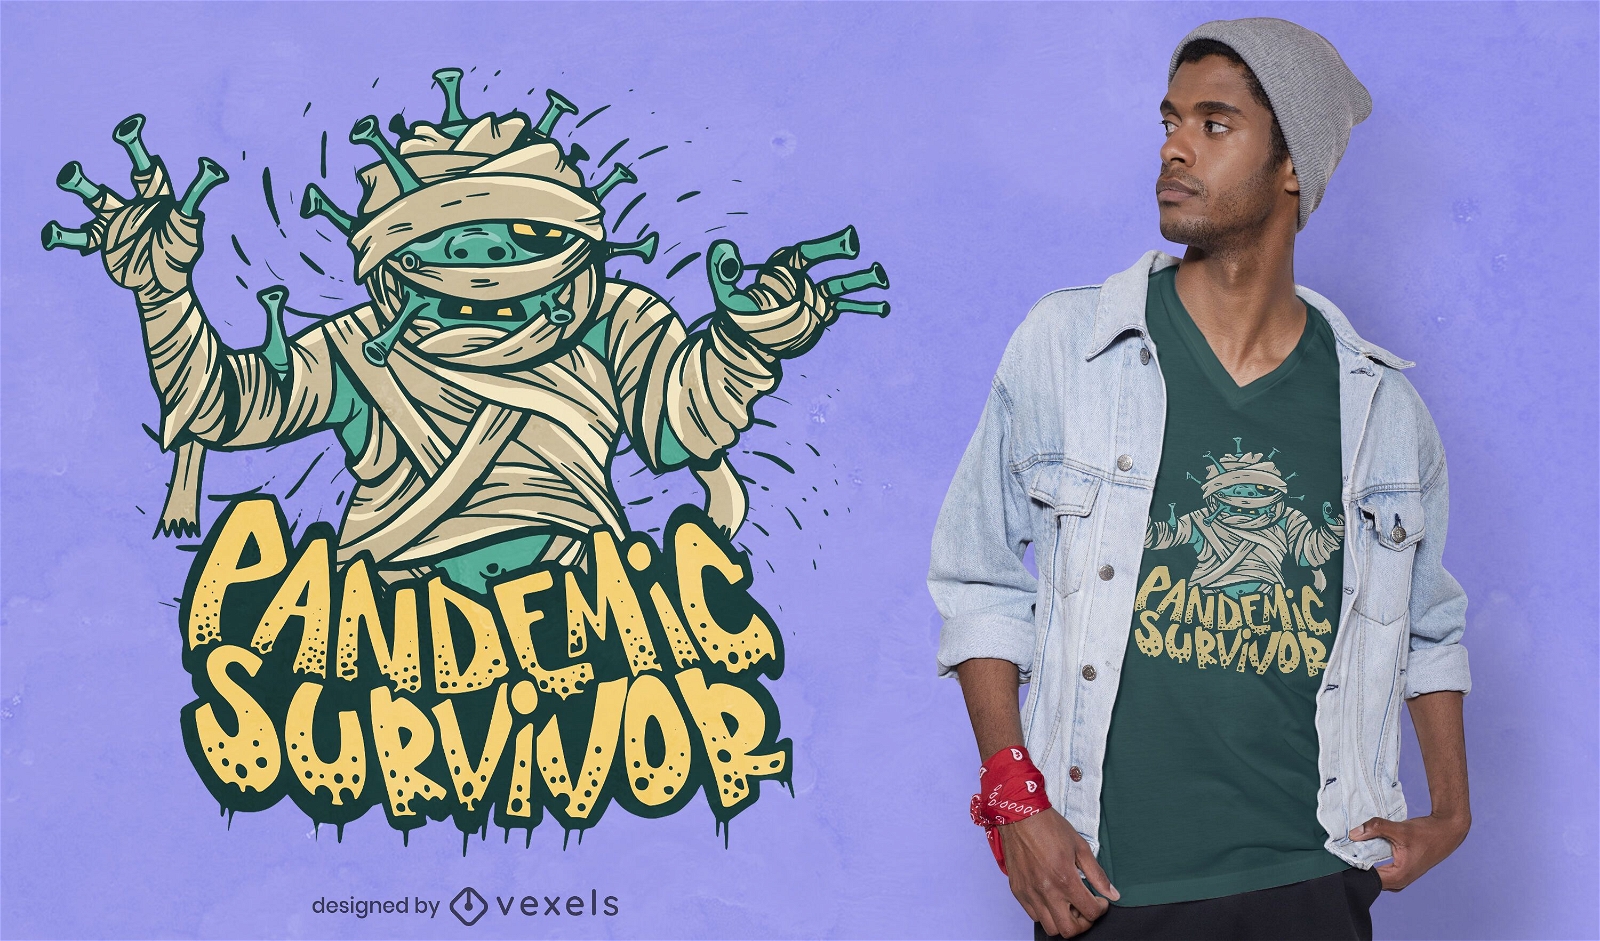 Pandemic survivor t-shirt design